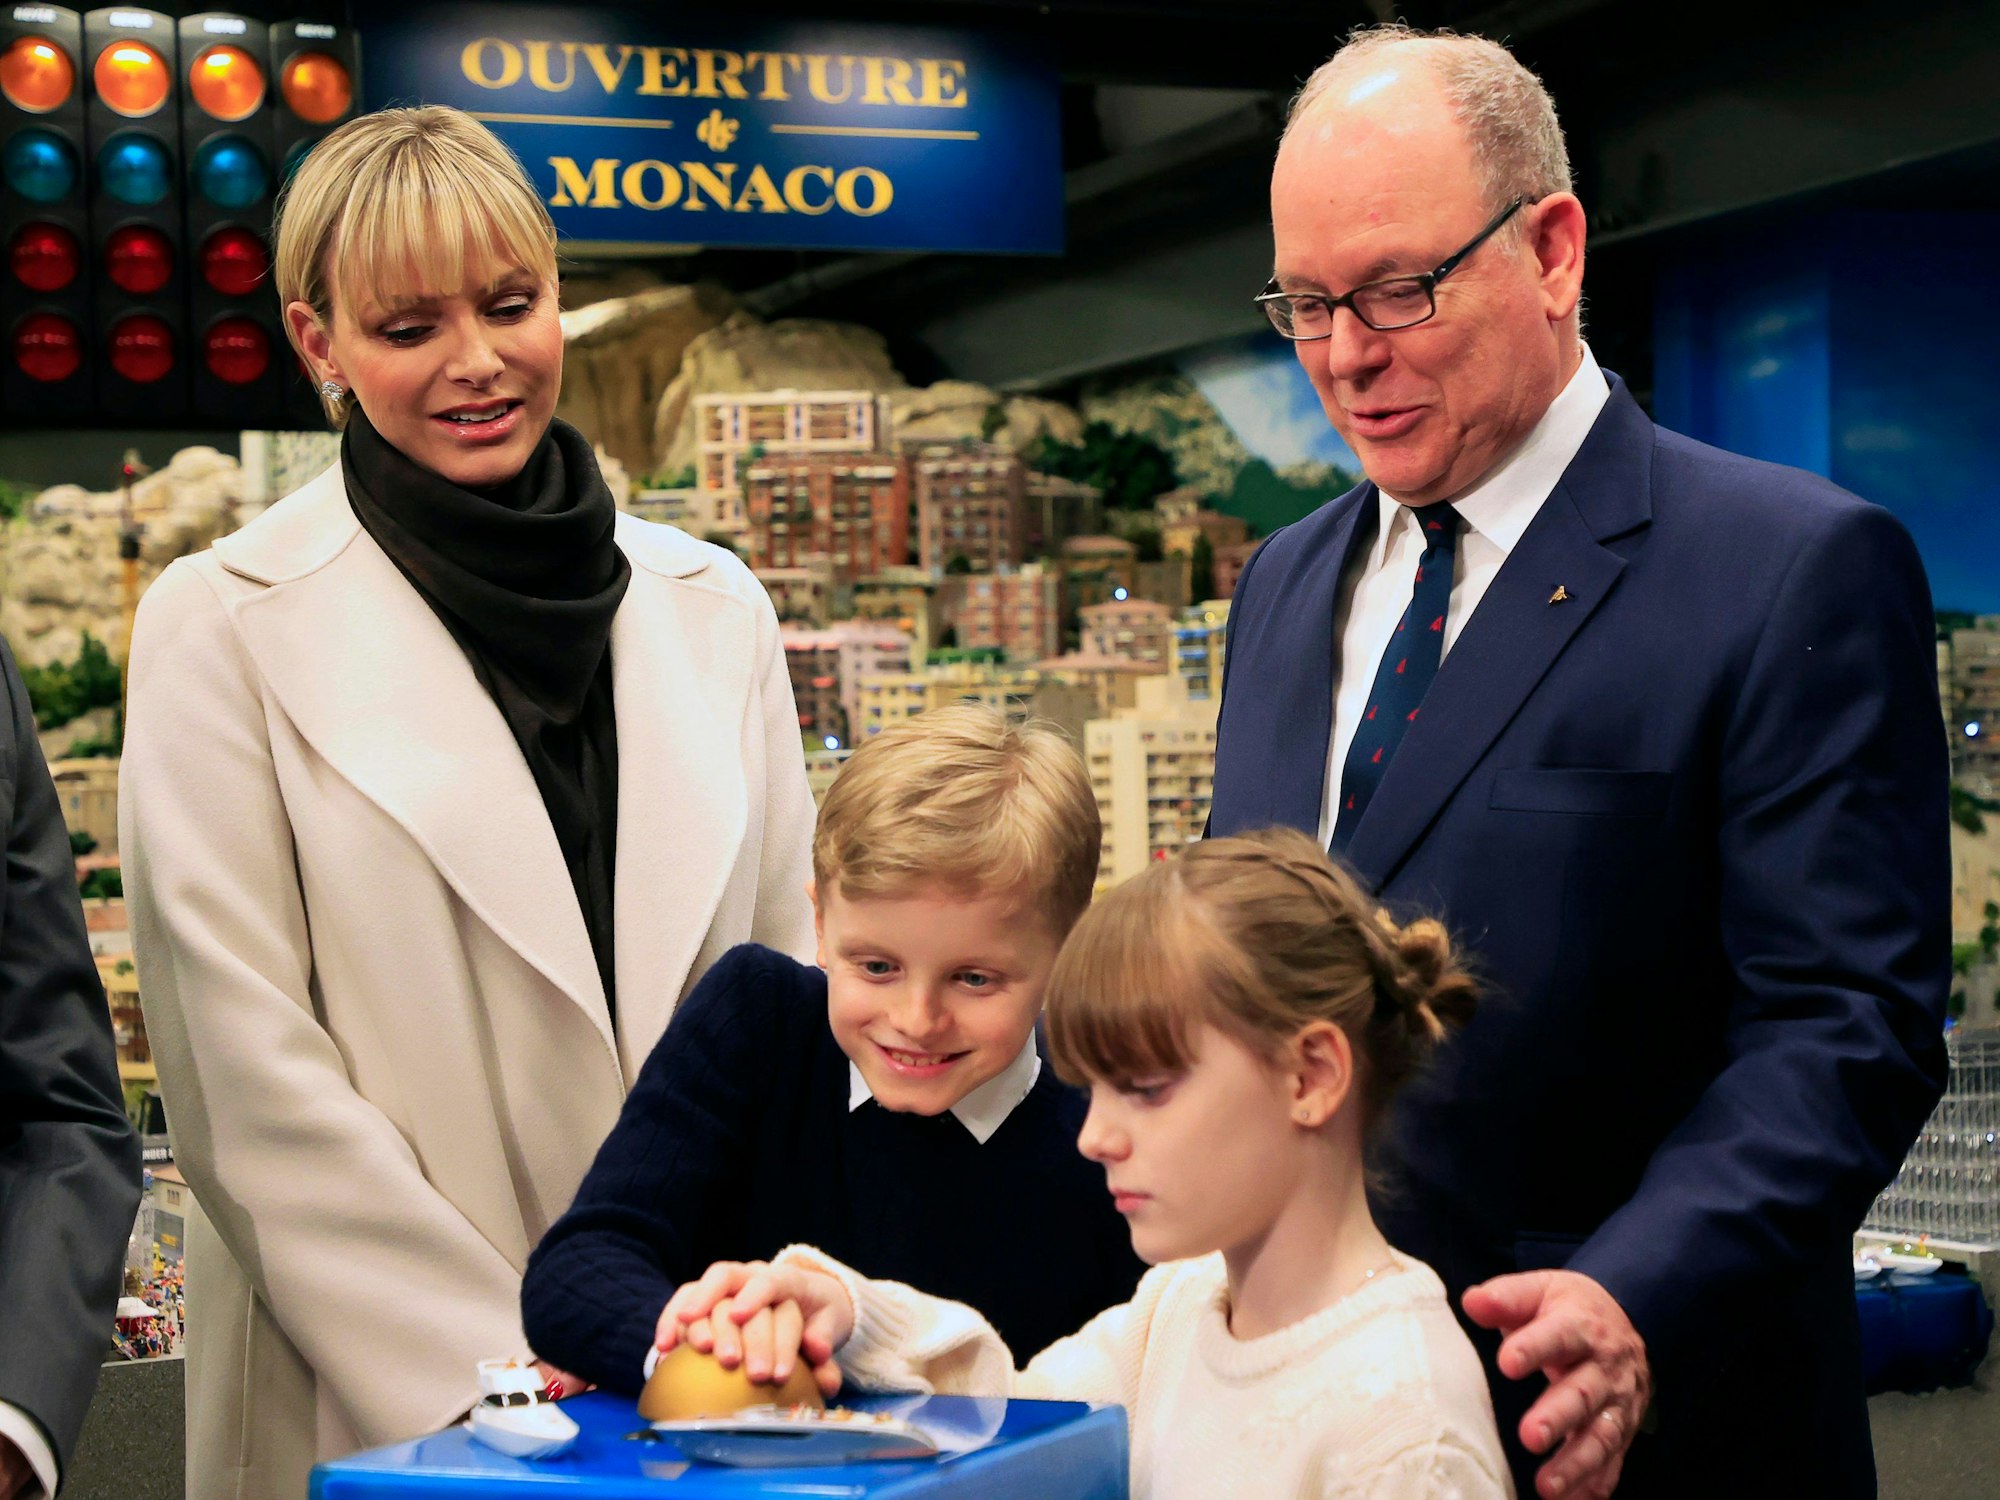 Fürst Albert II., Fürstin Charlène und die beiden Zwillinge Gabriella und Jacques während der Eröffnung der Monaco-Welt im Miniatur Wunderland.